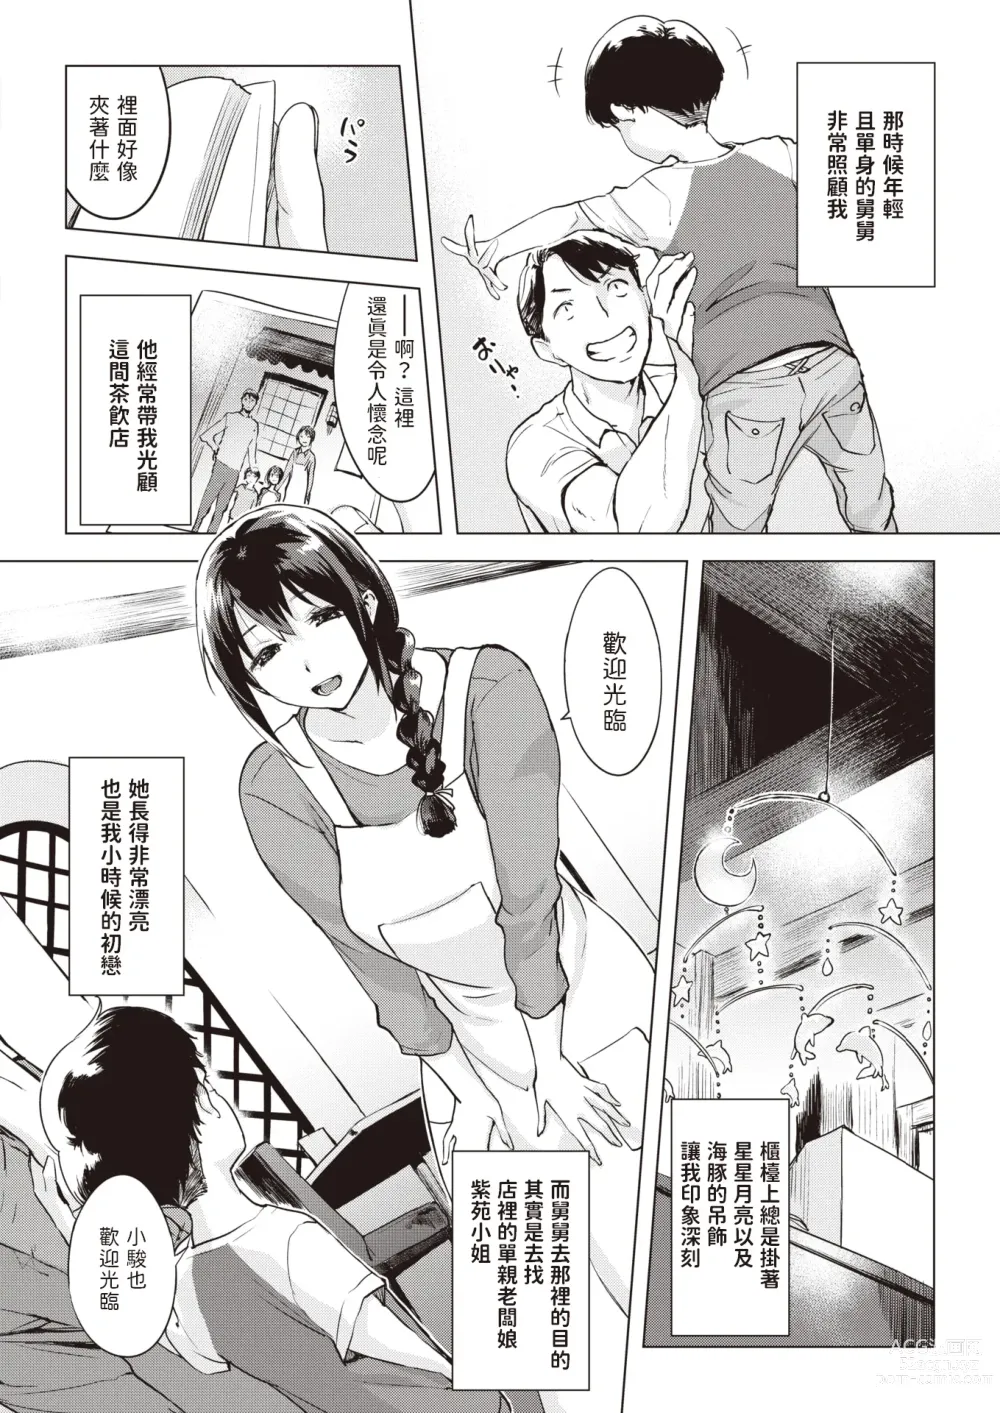 Page 2 of manga Iruka no Mobile